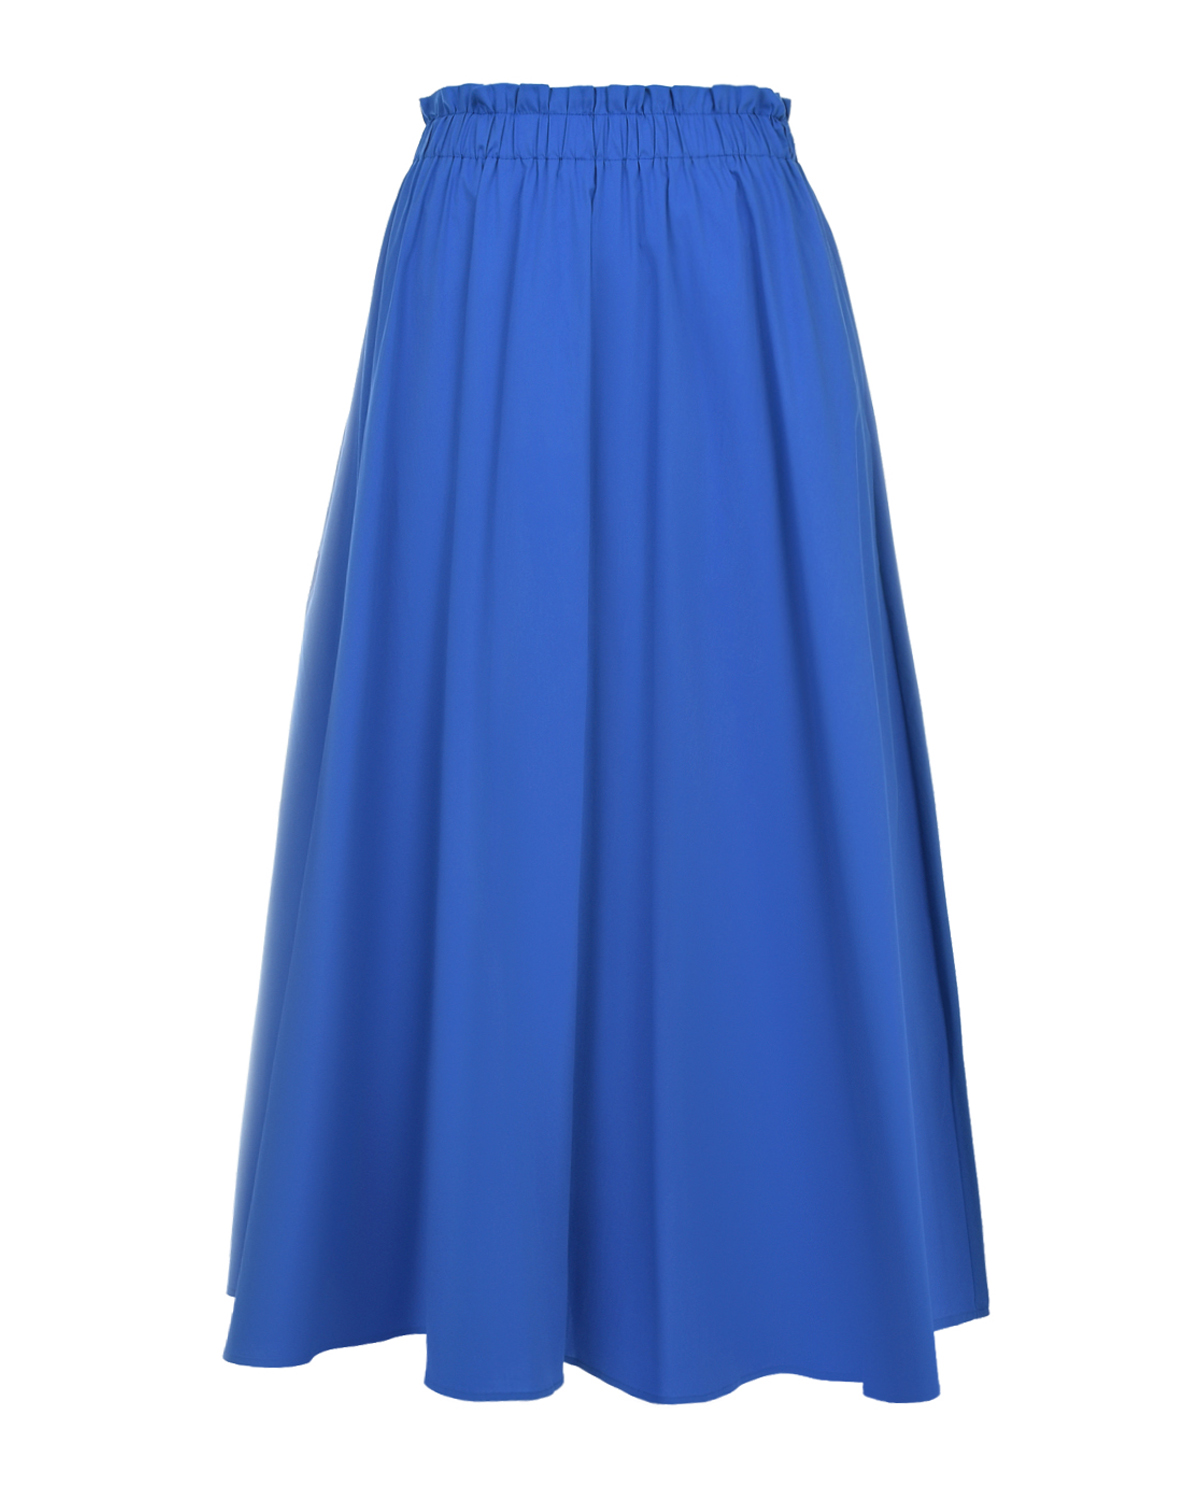 Синяя юбка с поясом на резинке Pietro Brunelli, размер 40, цвет синий